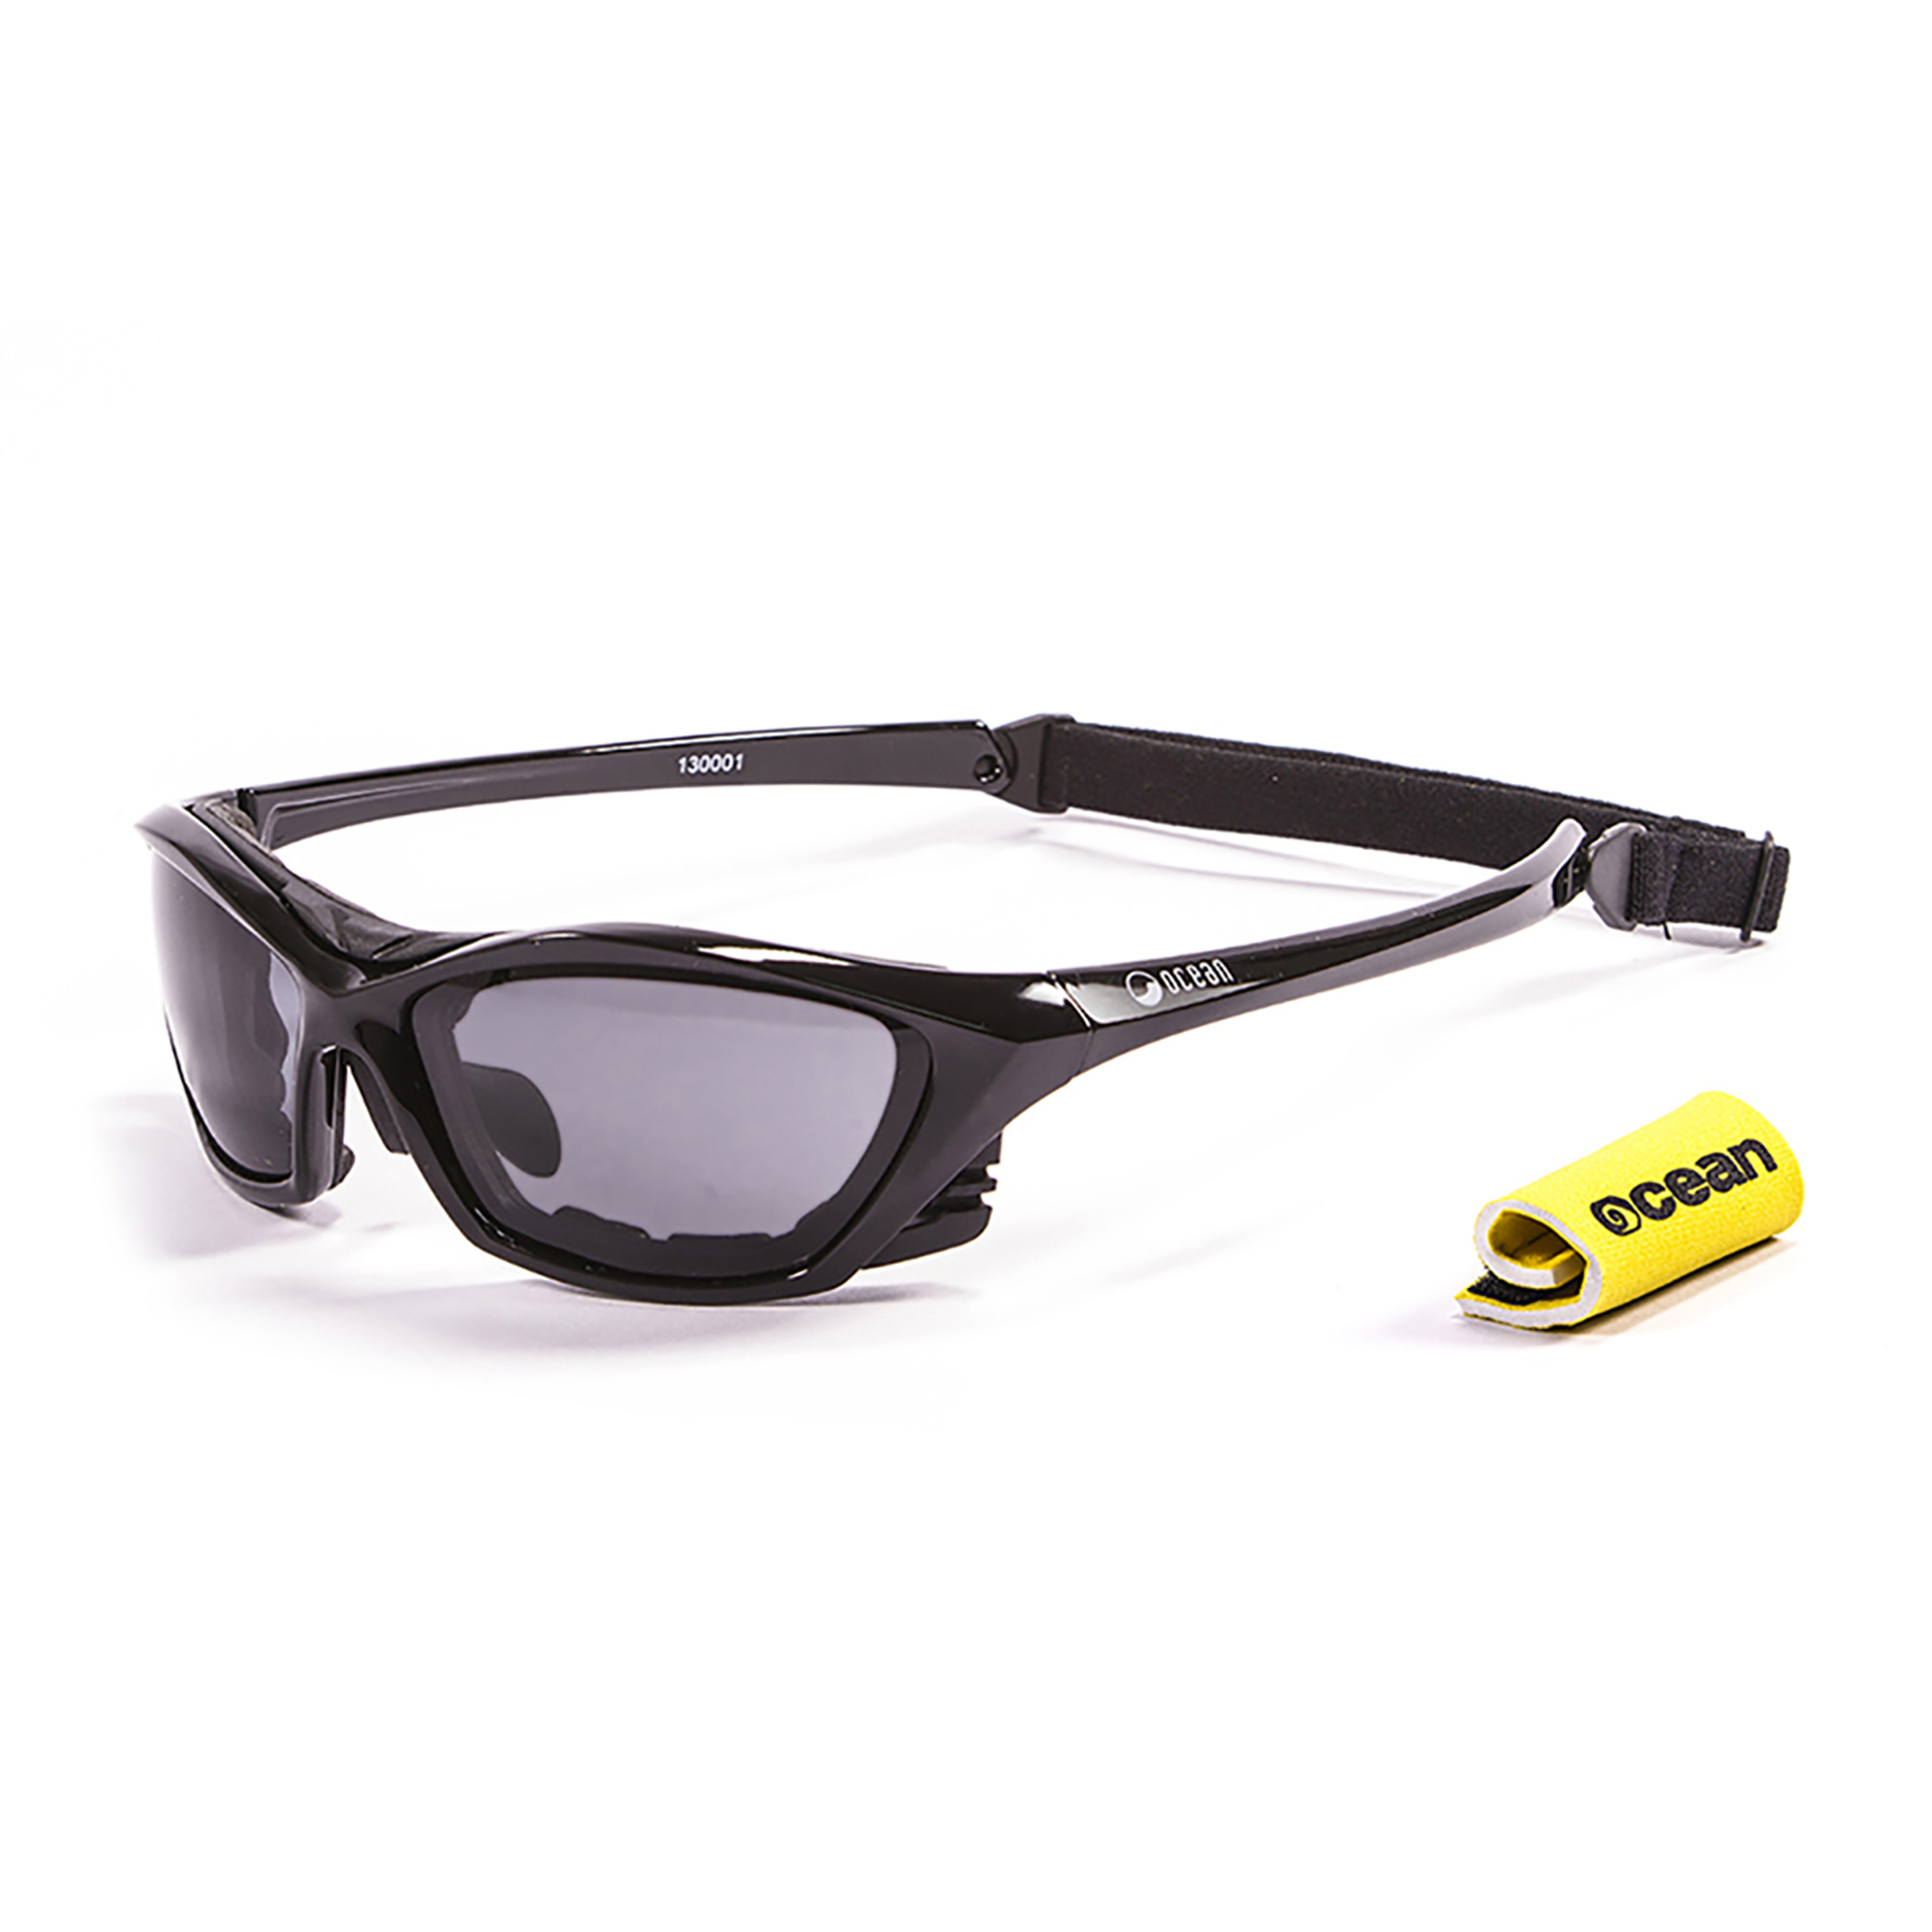 Gafas De Sol Técnicas Para La Práctica De Deportes De Agua  Lake Garda Ocean Sunglasses - Negro  MKP